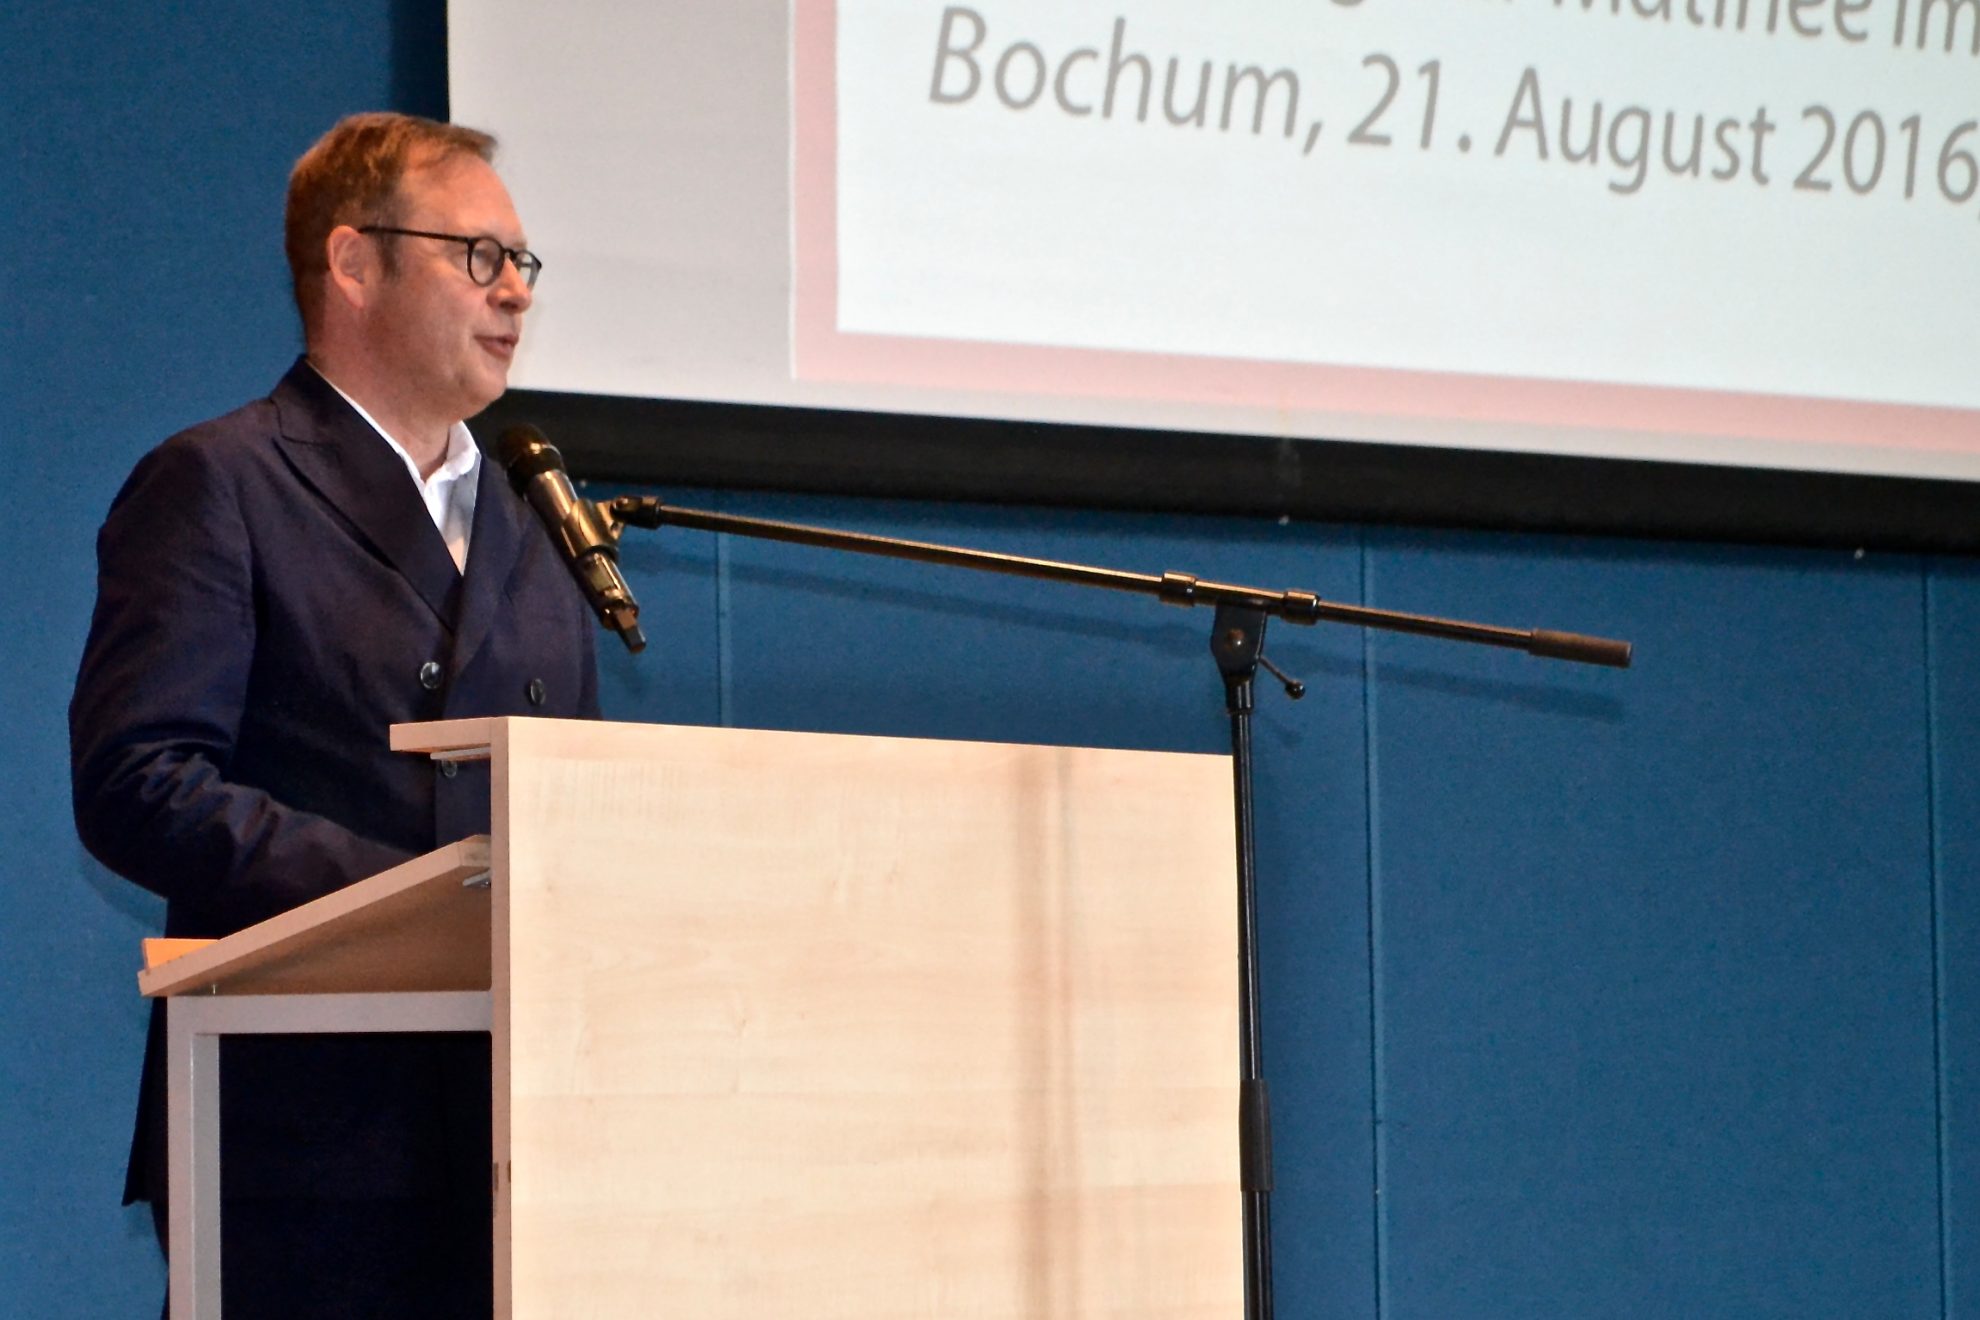 70 Jahre NRW - Matinee in Bochum: Karsten Rudolph, Vorsitzender der SPD Bochum